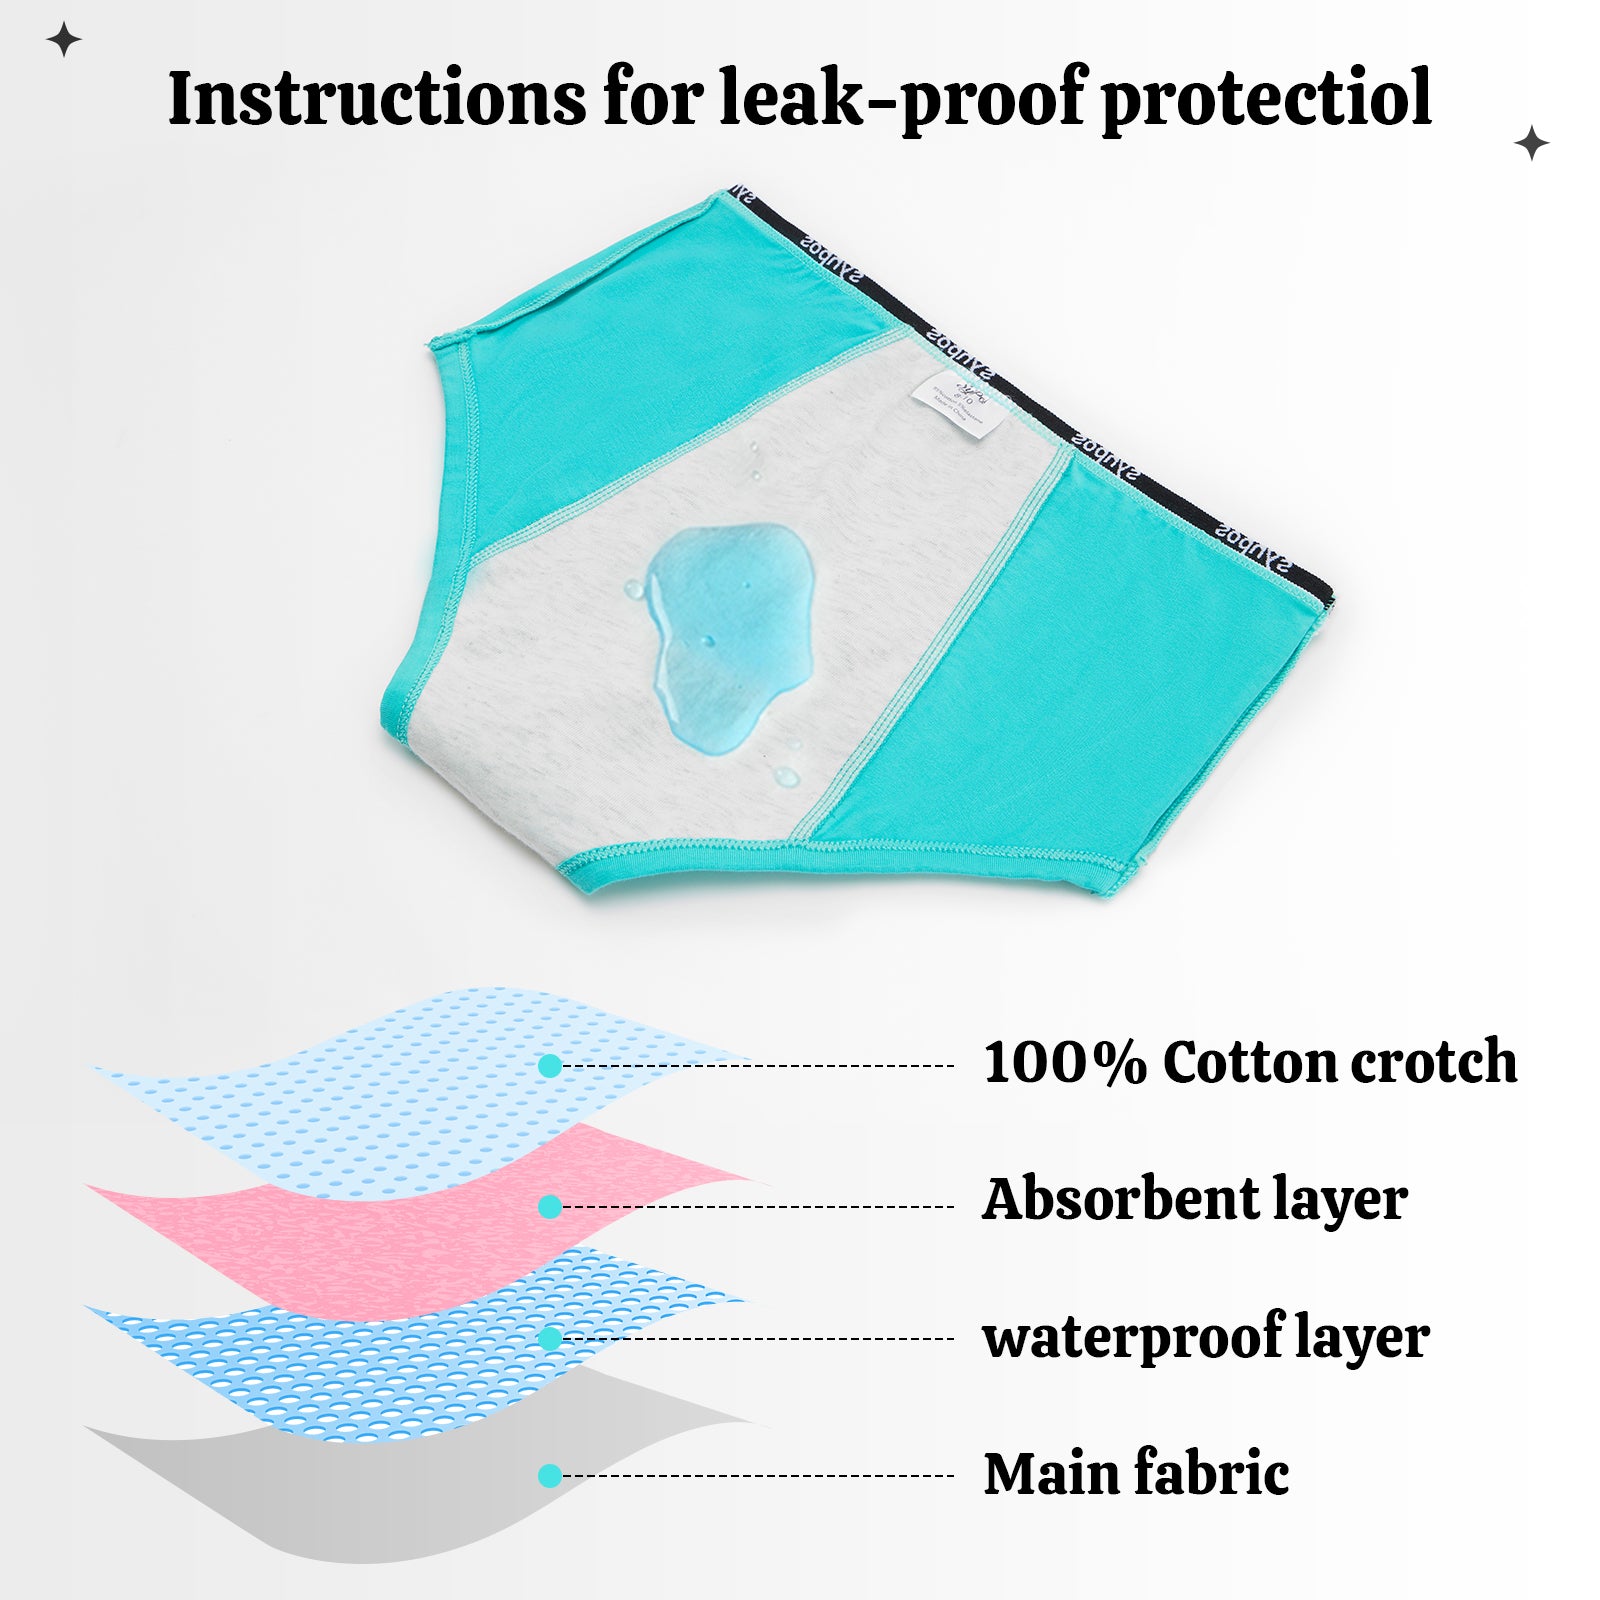 Teen leak-proof panties - Leak-proof and period panties for